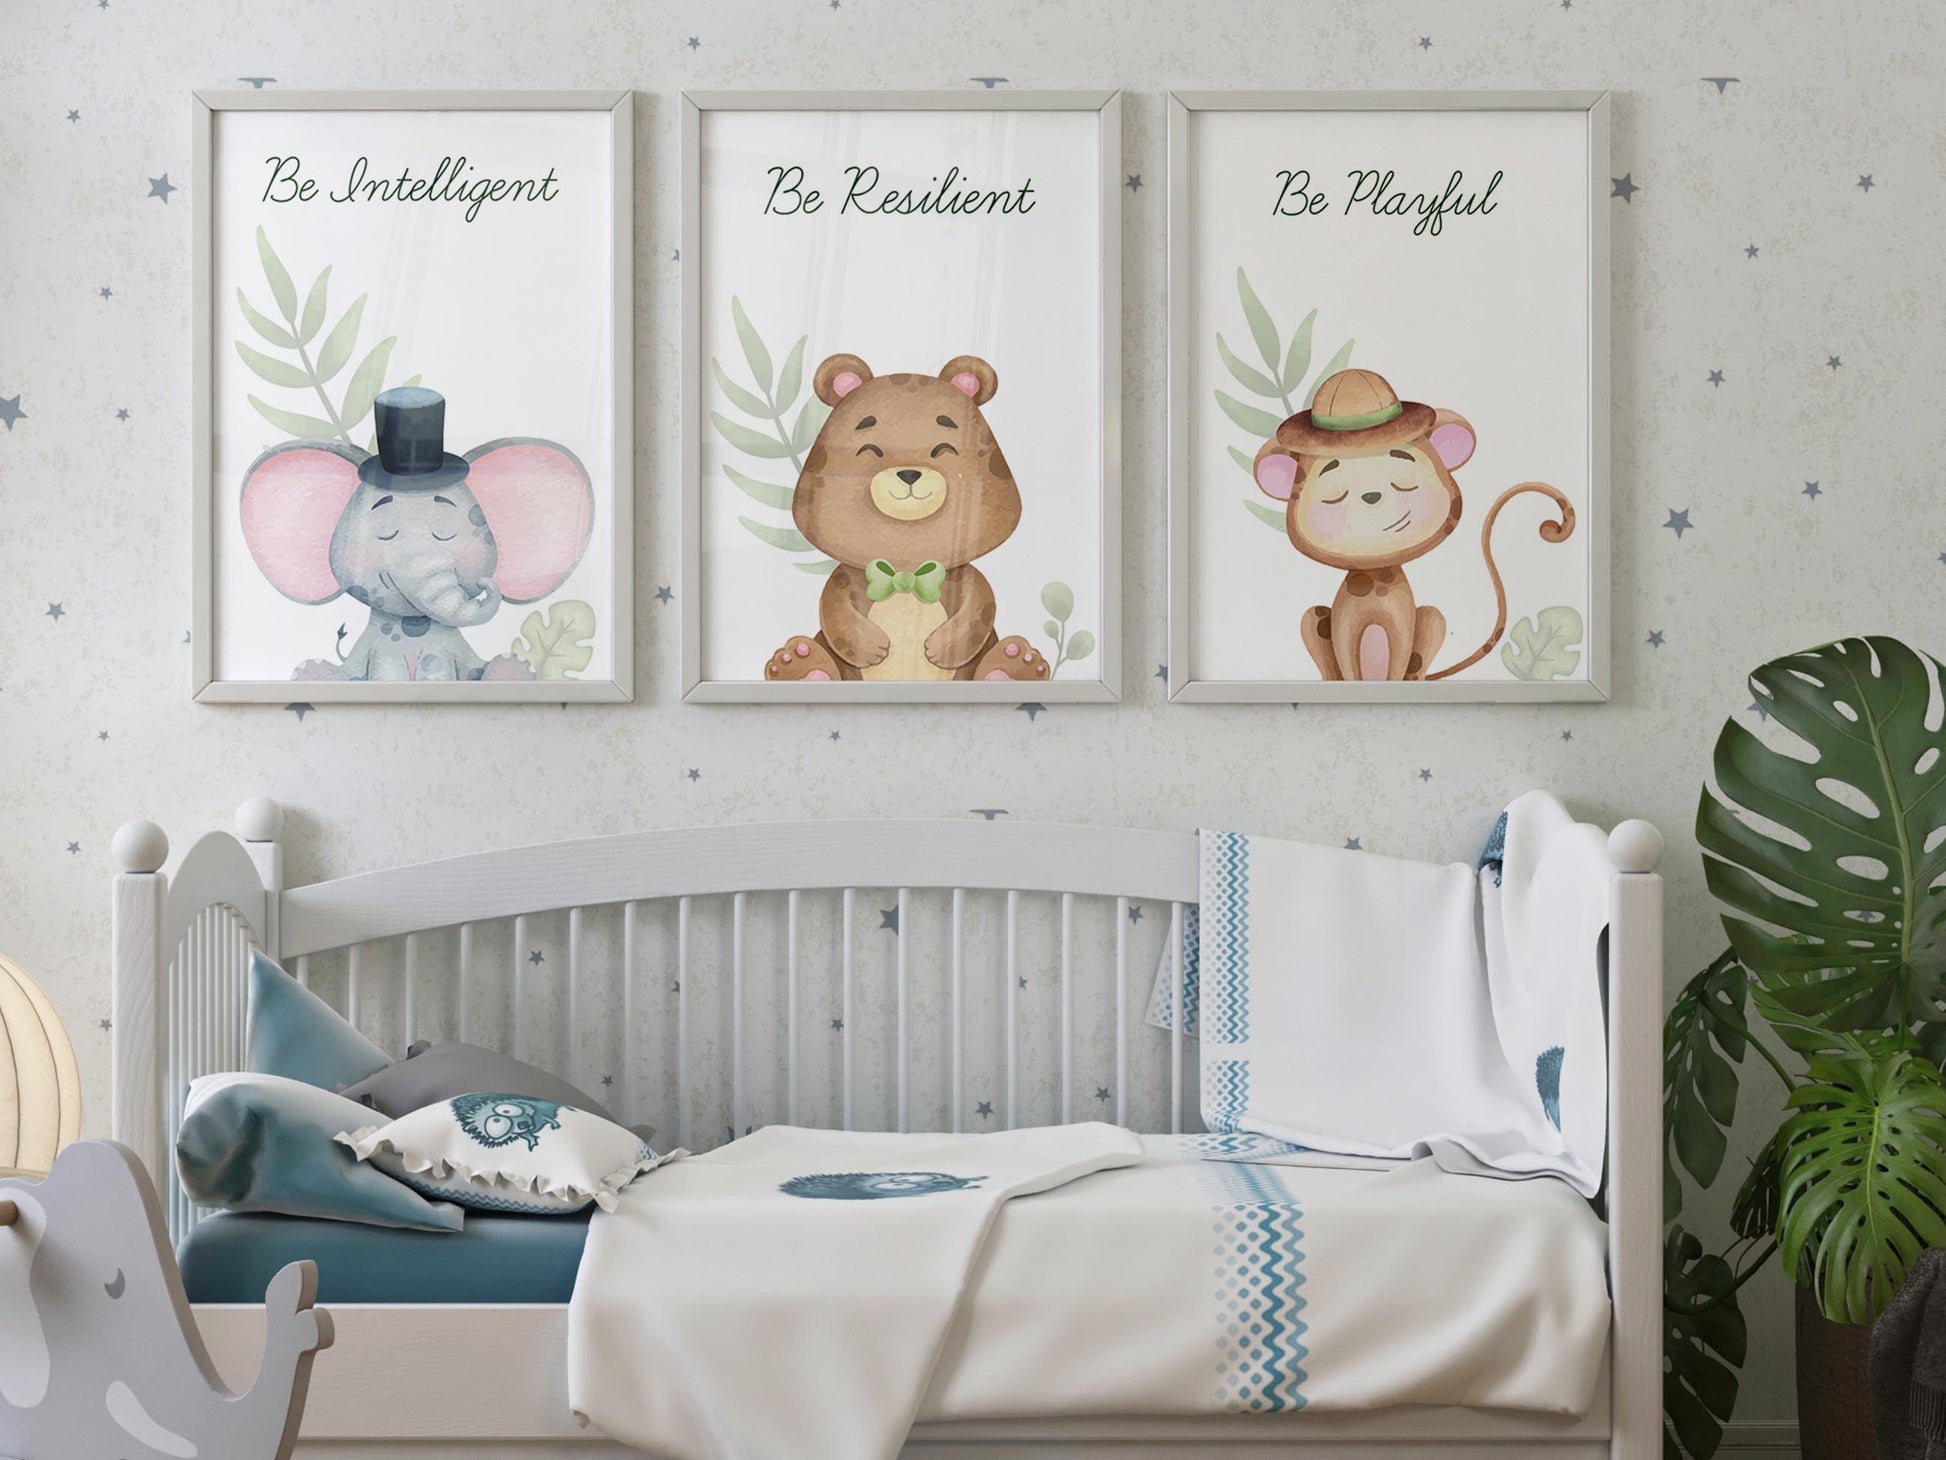 Set of 3 adorable animal prints for kids' room decor.